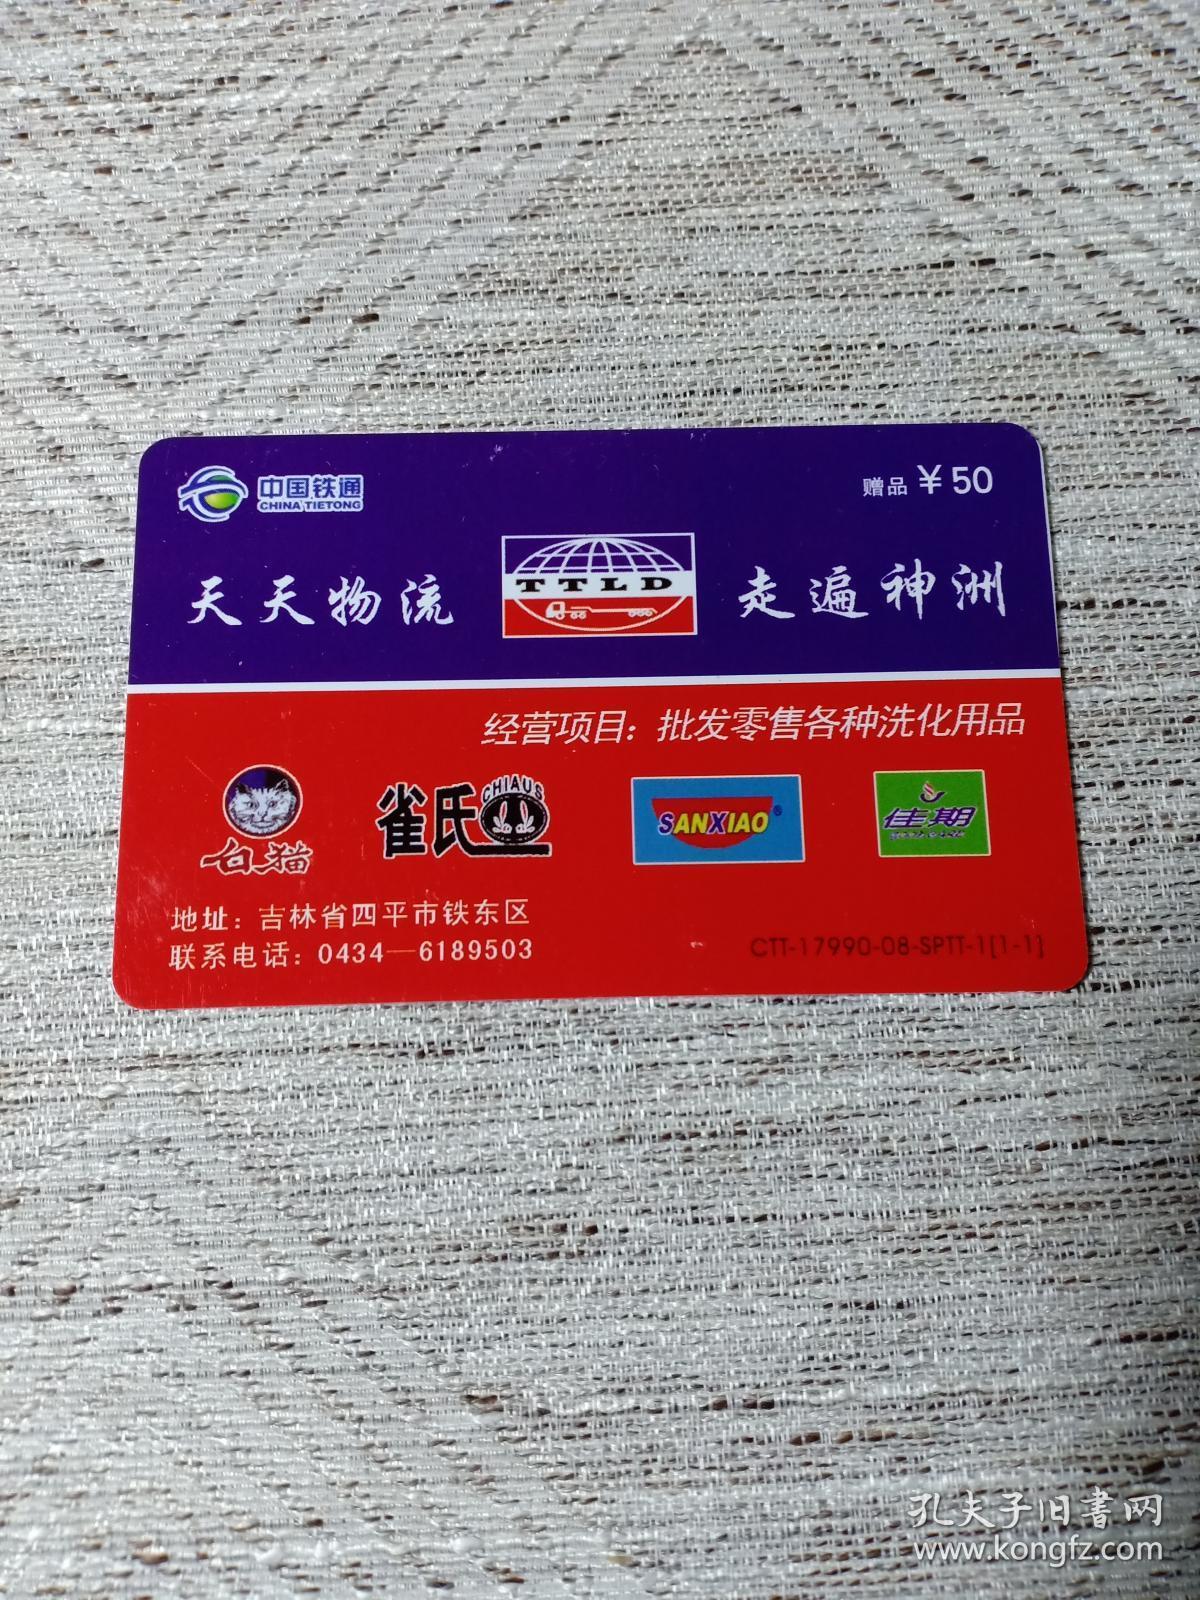 卡片688 天天物流 走遍神洲 赠品卡 50 中国铁通 17990IP企业联名卡 电话卡 个性化 CTT-17990-08-SPTT-1(1-1)